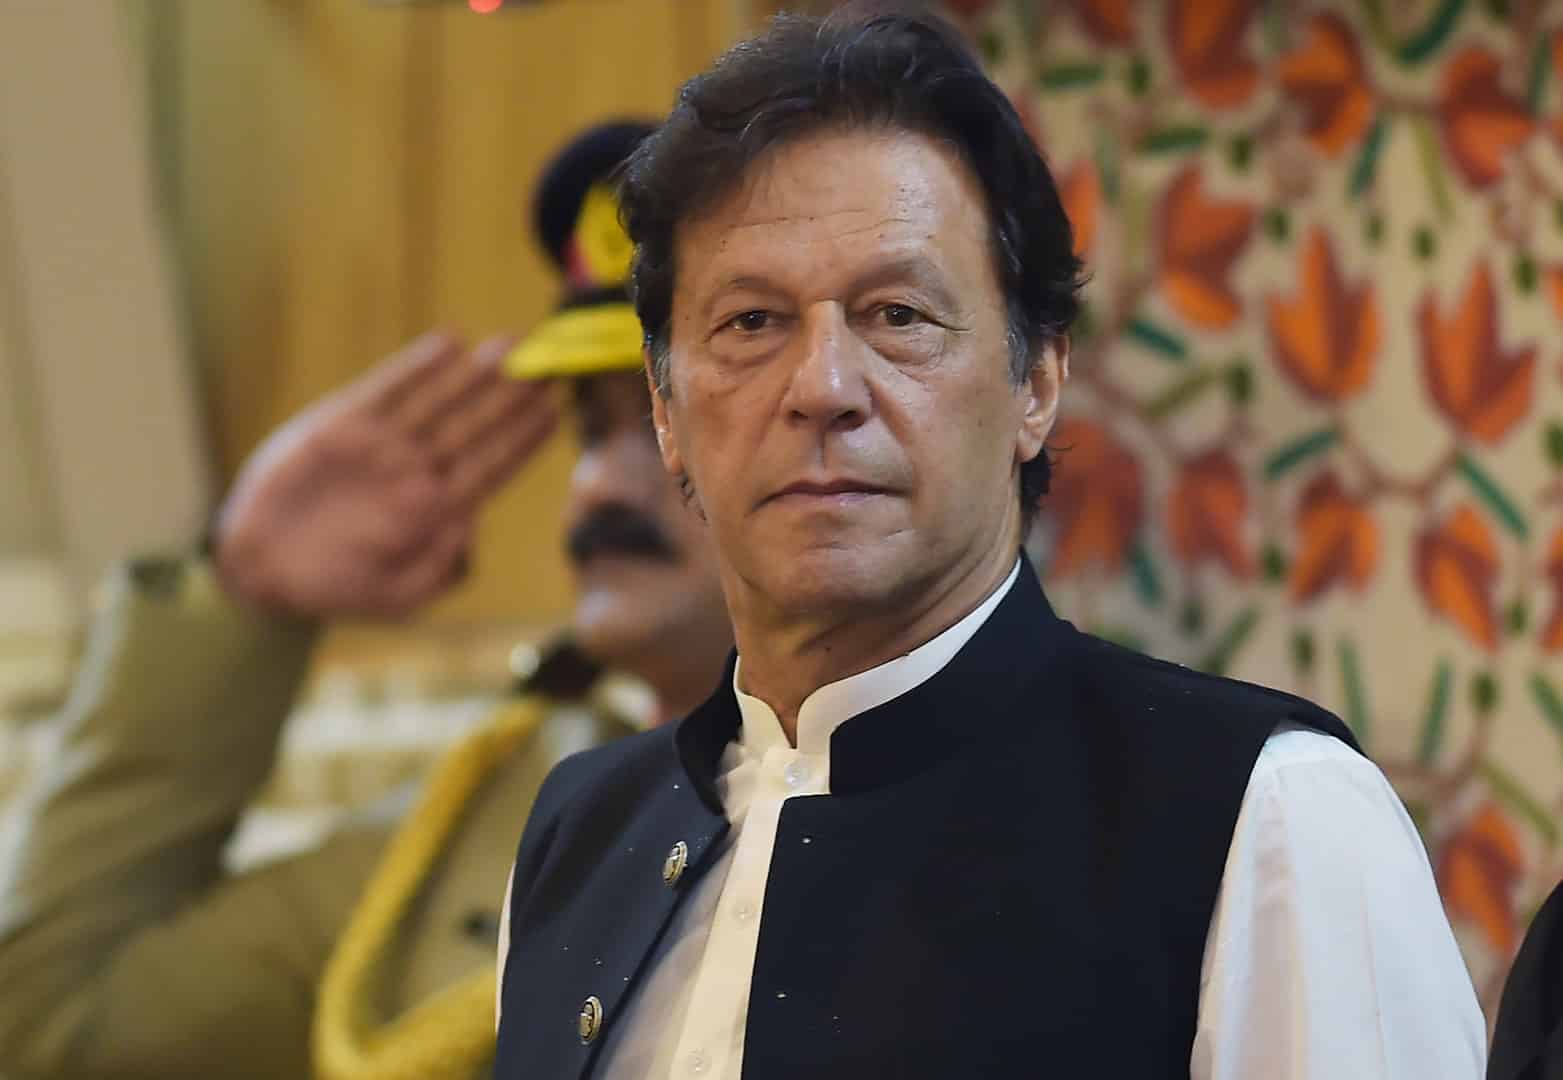 اصابة عمران خان رئيس وزراء باكستان بفيروس كورونا